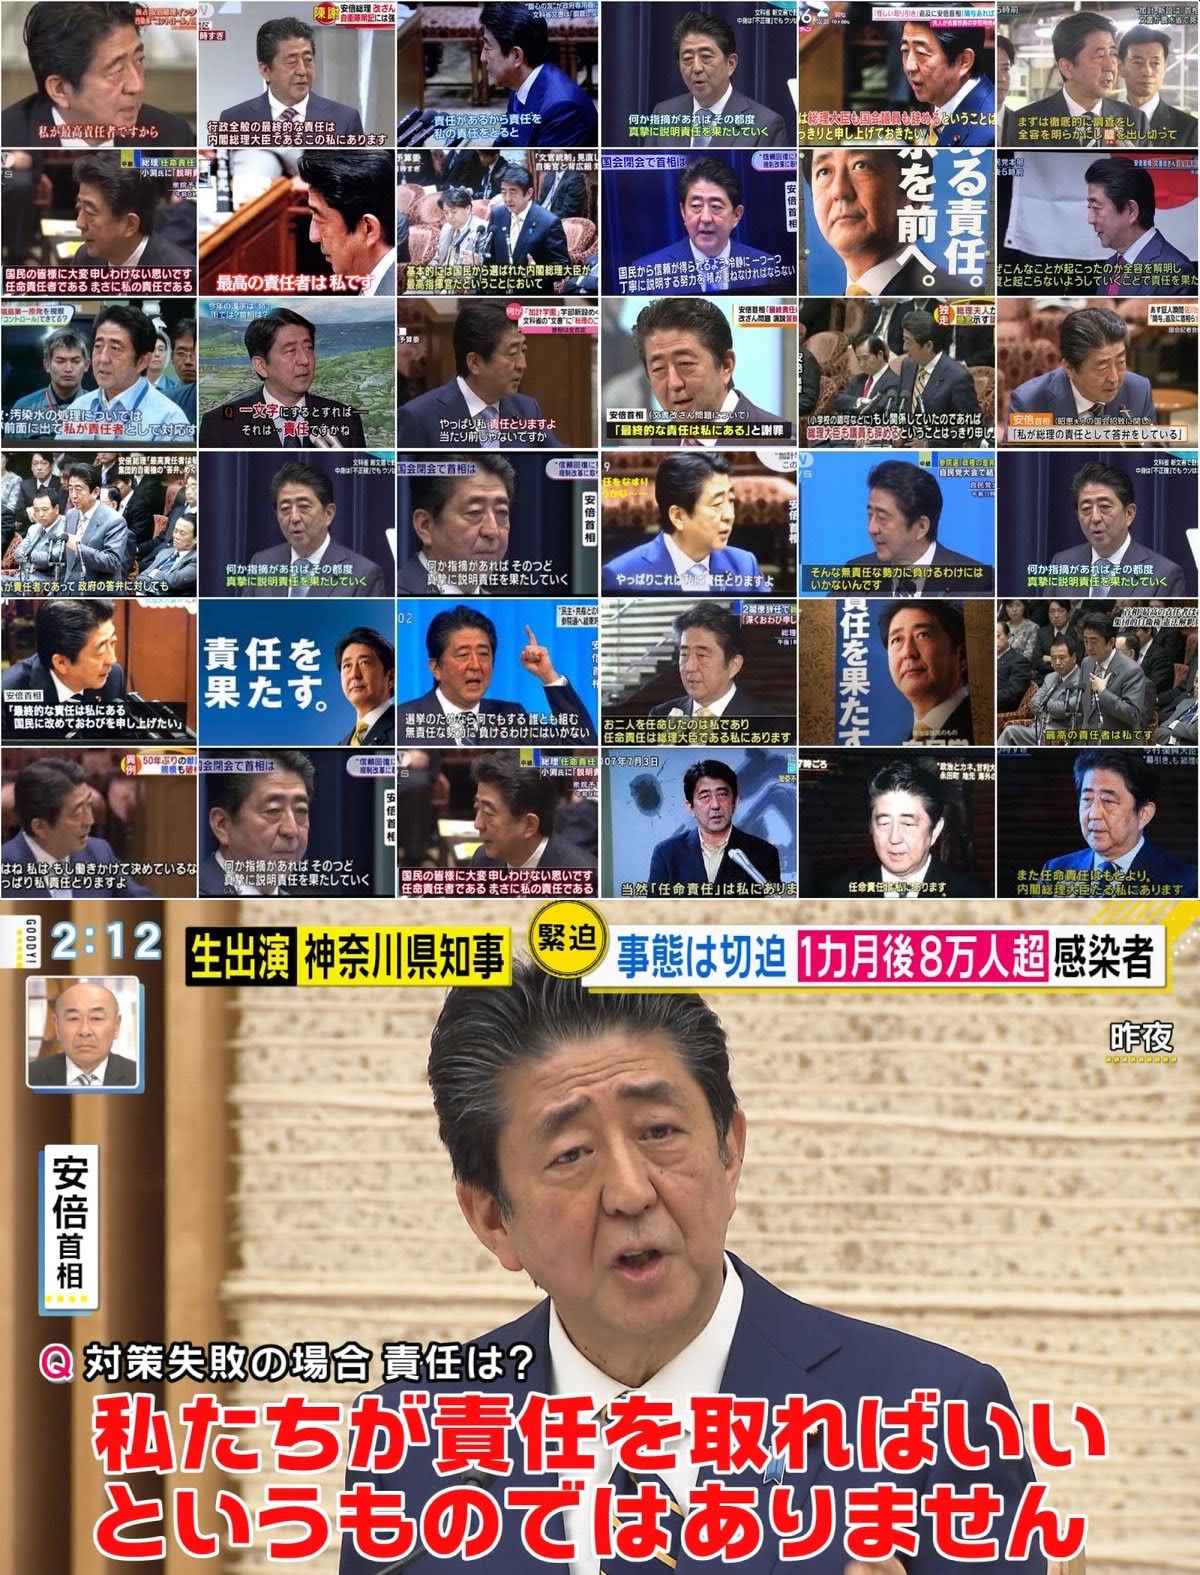 【岸田悲報】震災後、歴代総理がいつ現地入りしたかの比較がテレビで流れてしまう🤓キシオ…😨  [359965264]\n_1